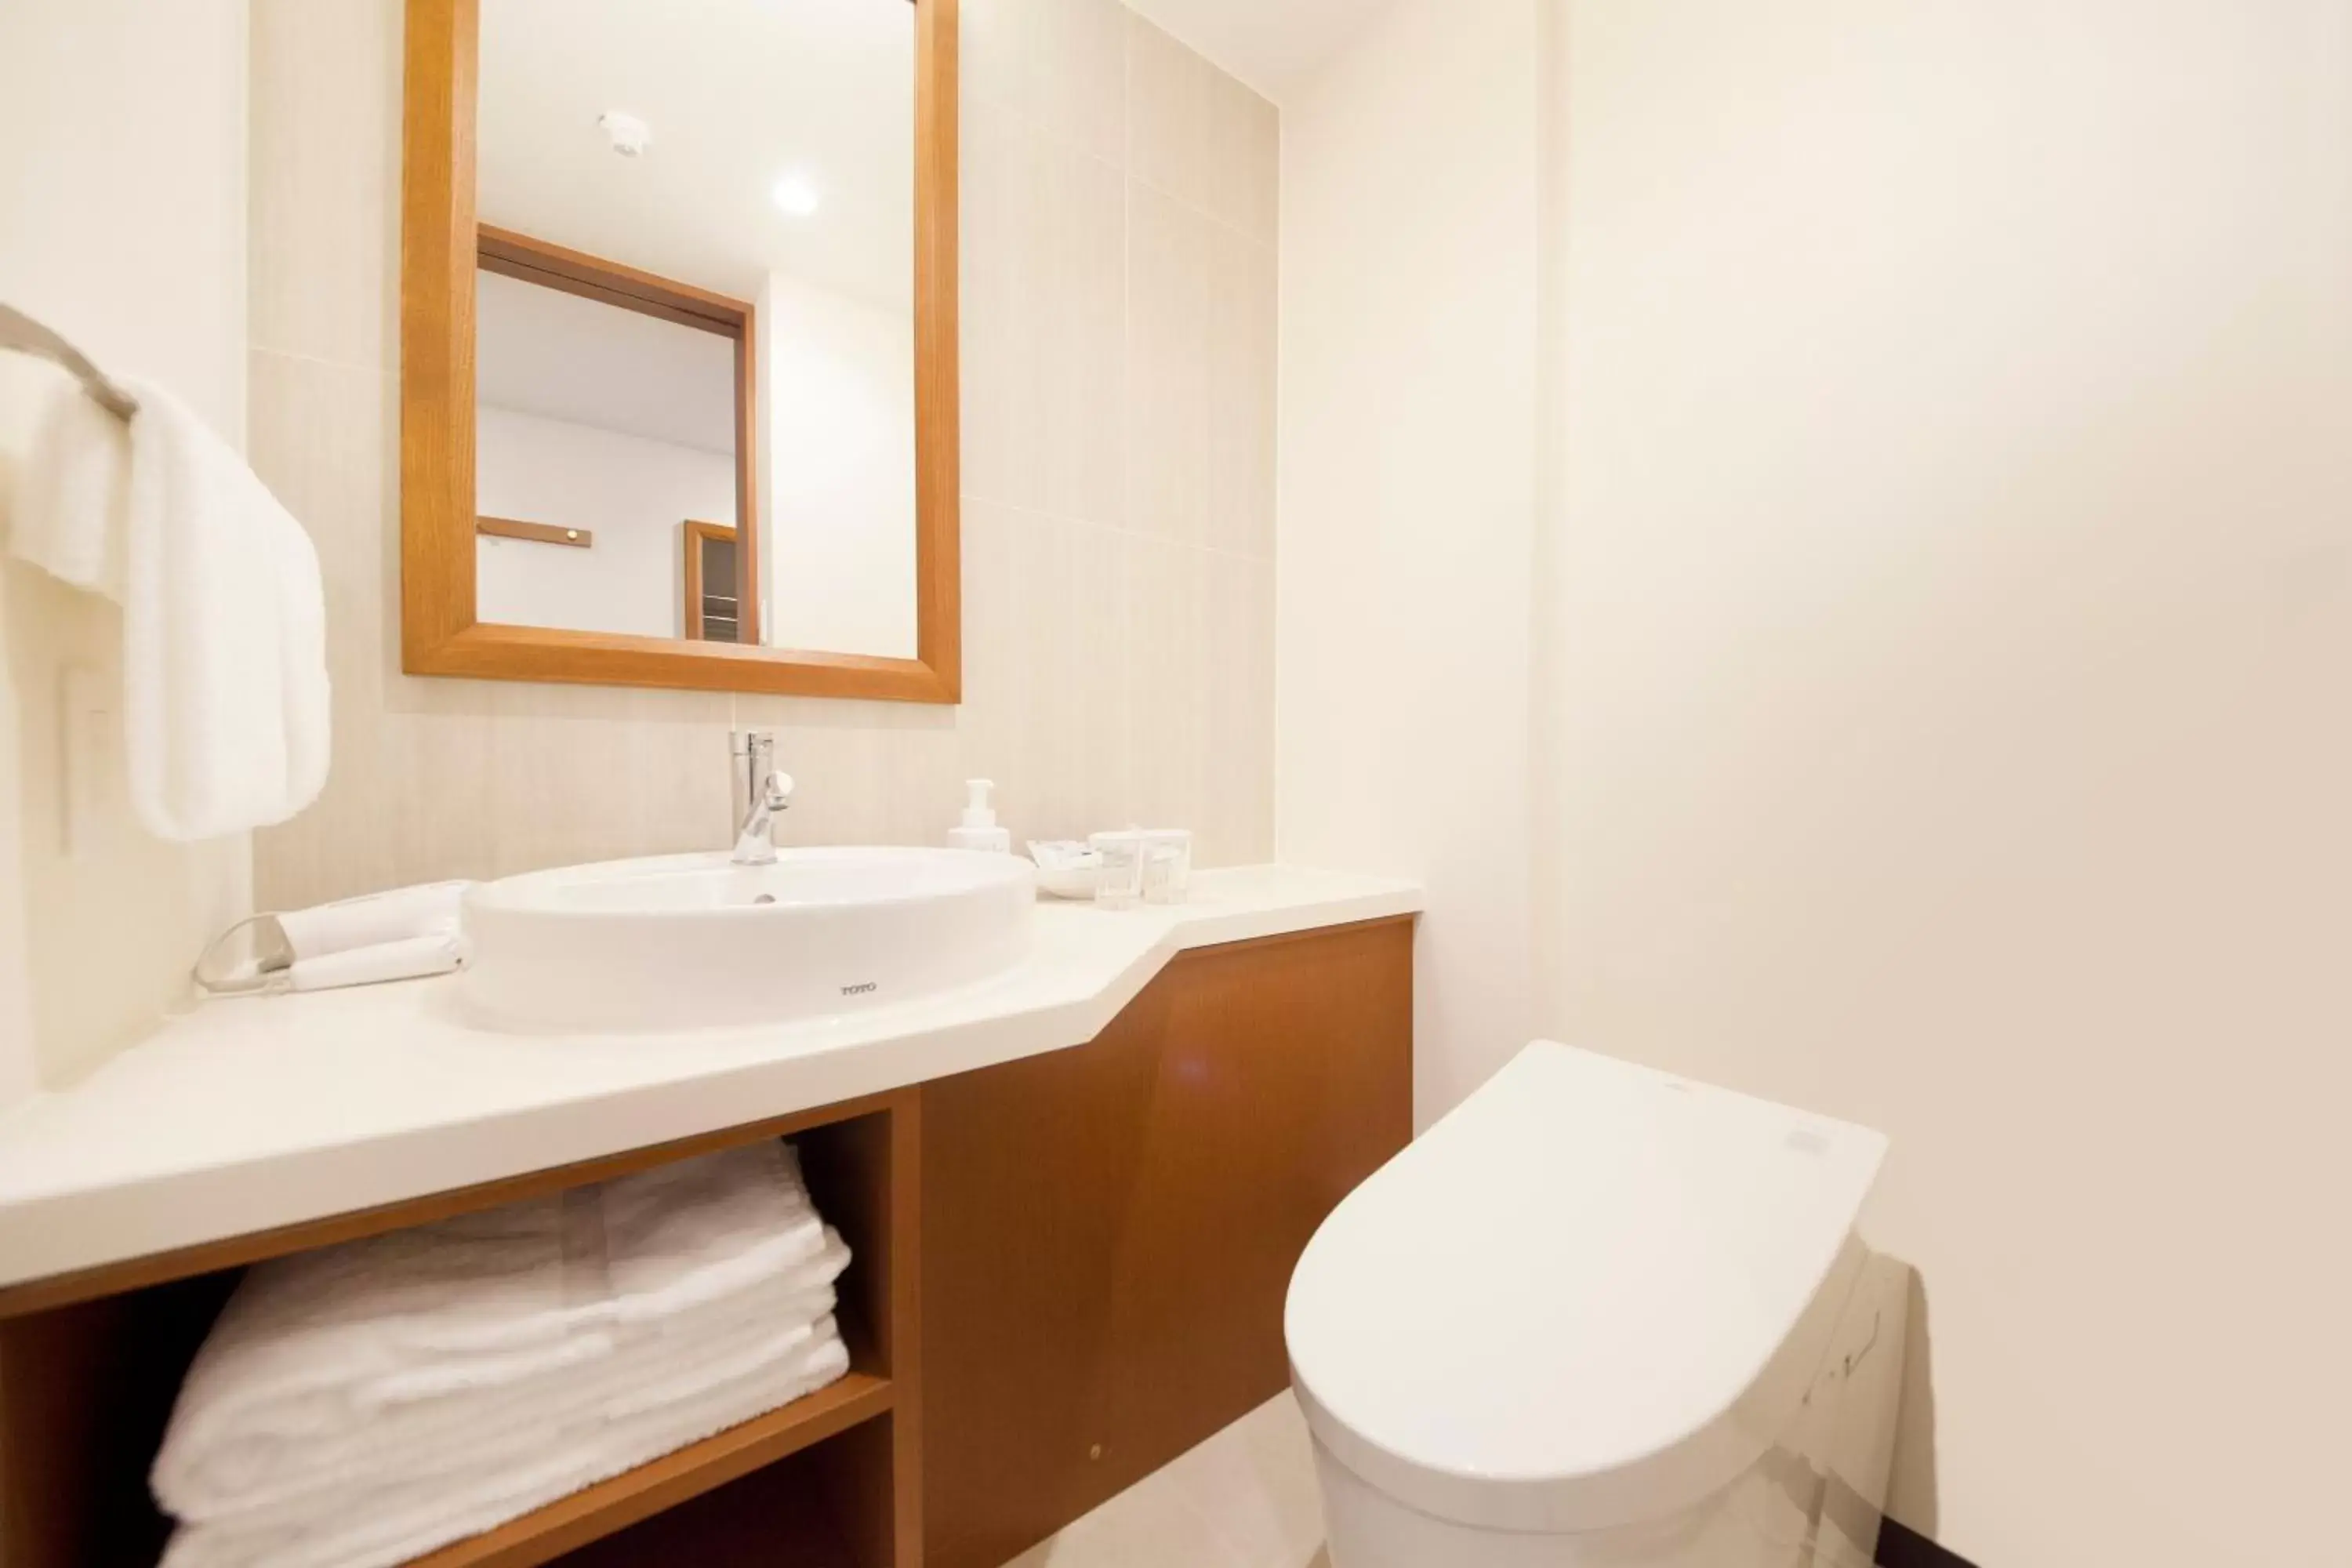 Area and facilities, Bathroom in Richmond Hotel Tokyo Mejiro